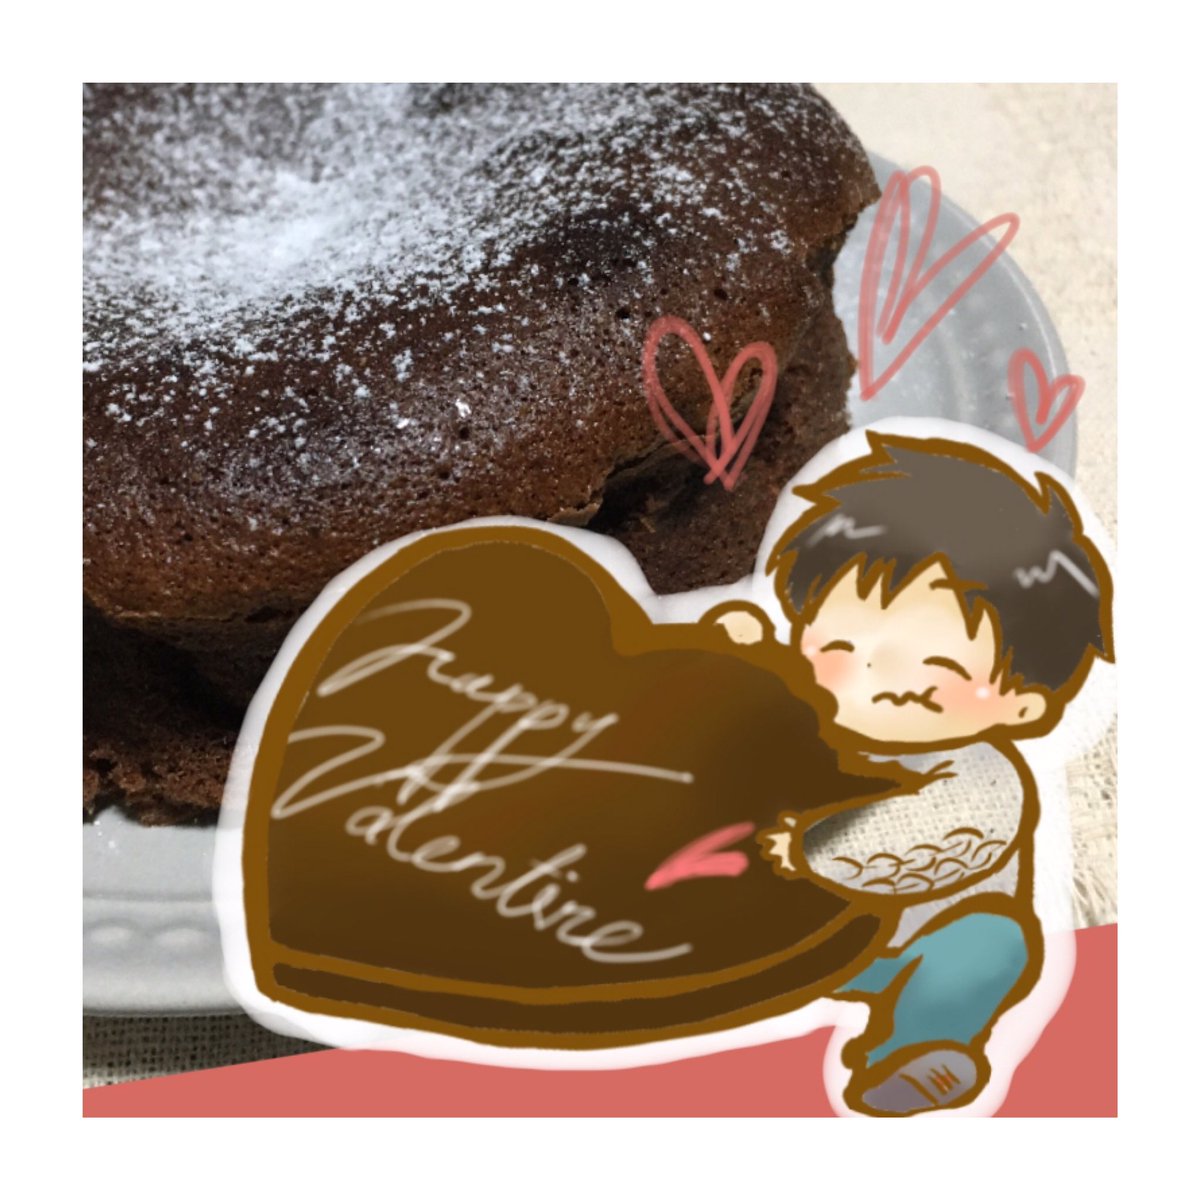 Namida R Happy Valentine 今年はガトーショコラを手作りしました 美味しい って言ってもらえると嬉しくなっちゃいますよね イラスト 手作り チョコ バレンタイン イラストレーター カップルイラスト カップル ガトーショコラ 遠距離恋愛